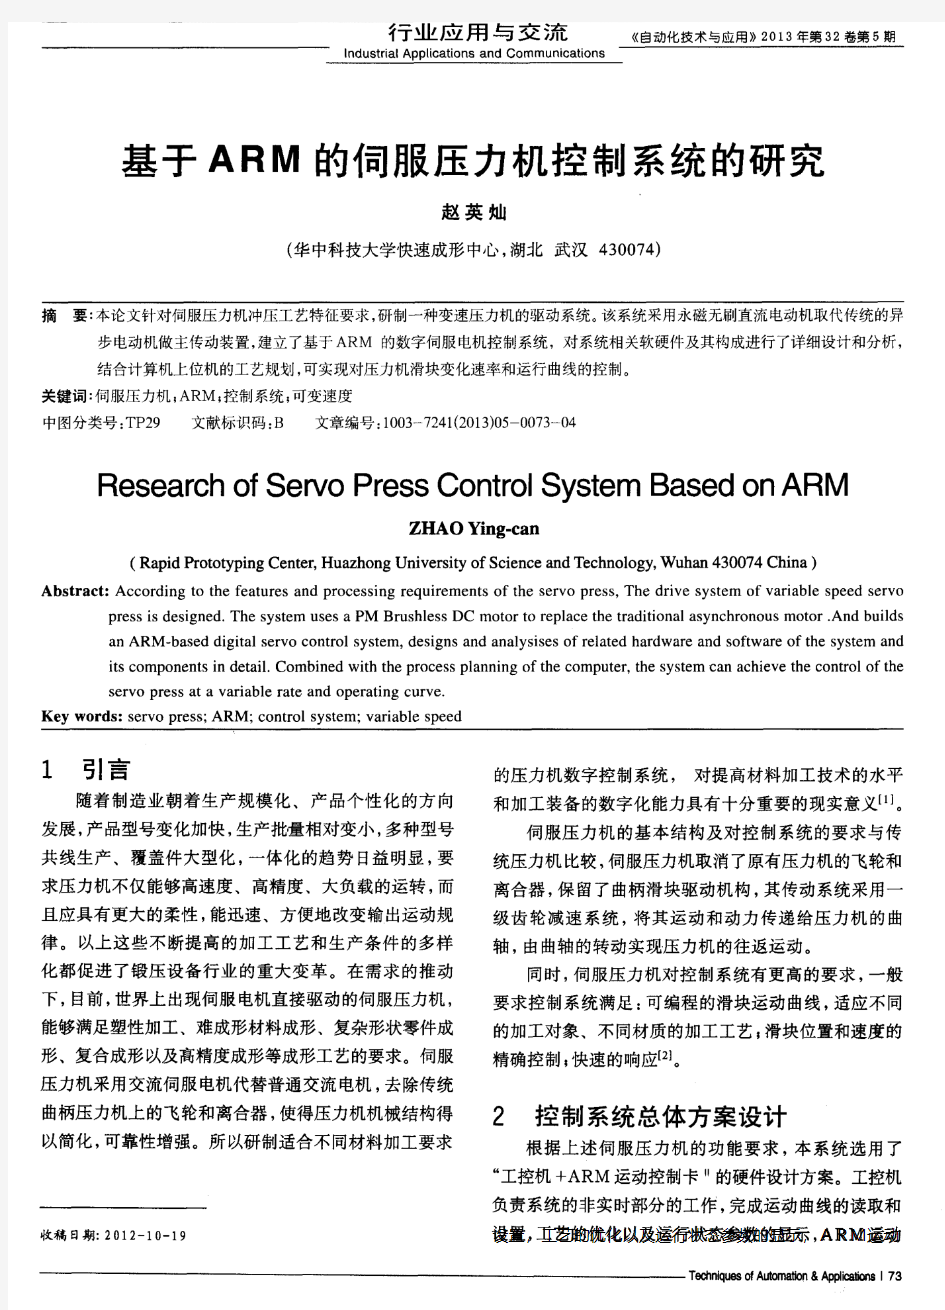 基于ARM的伺服压力机控制系统的研究